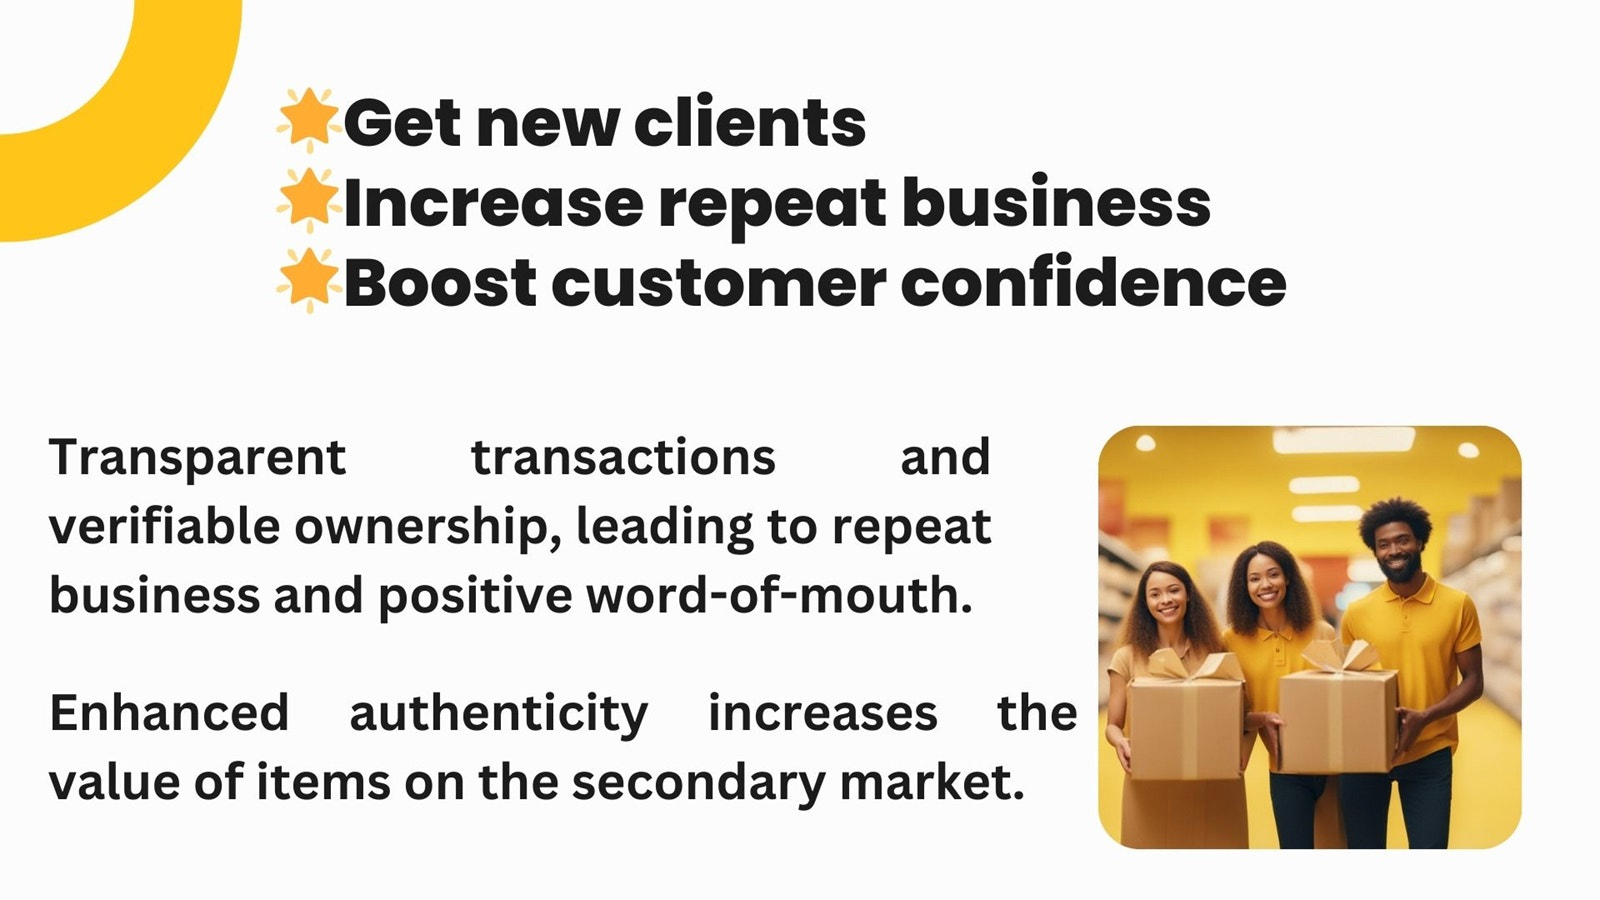 Få nya kunder, öka återkommande affärer, öka förtroendet